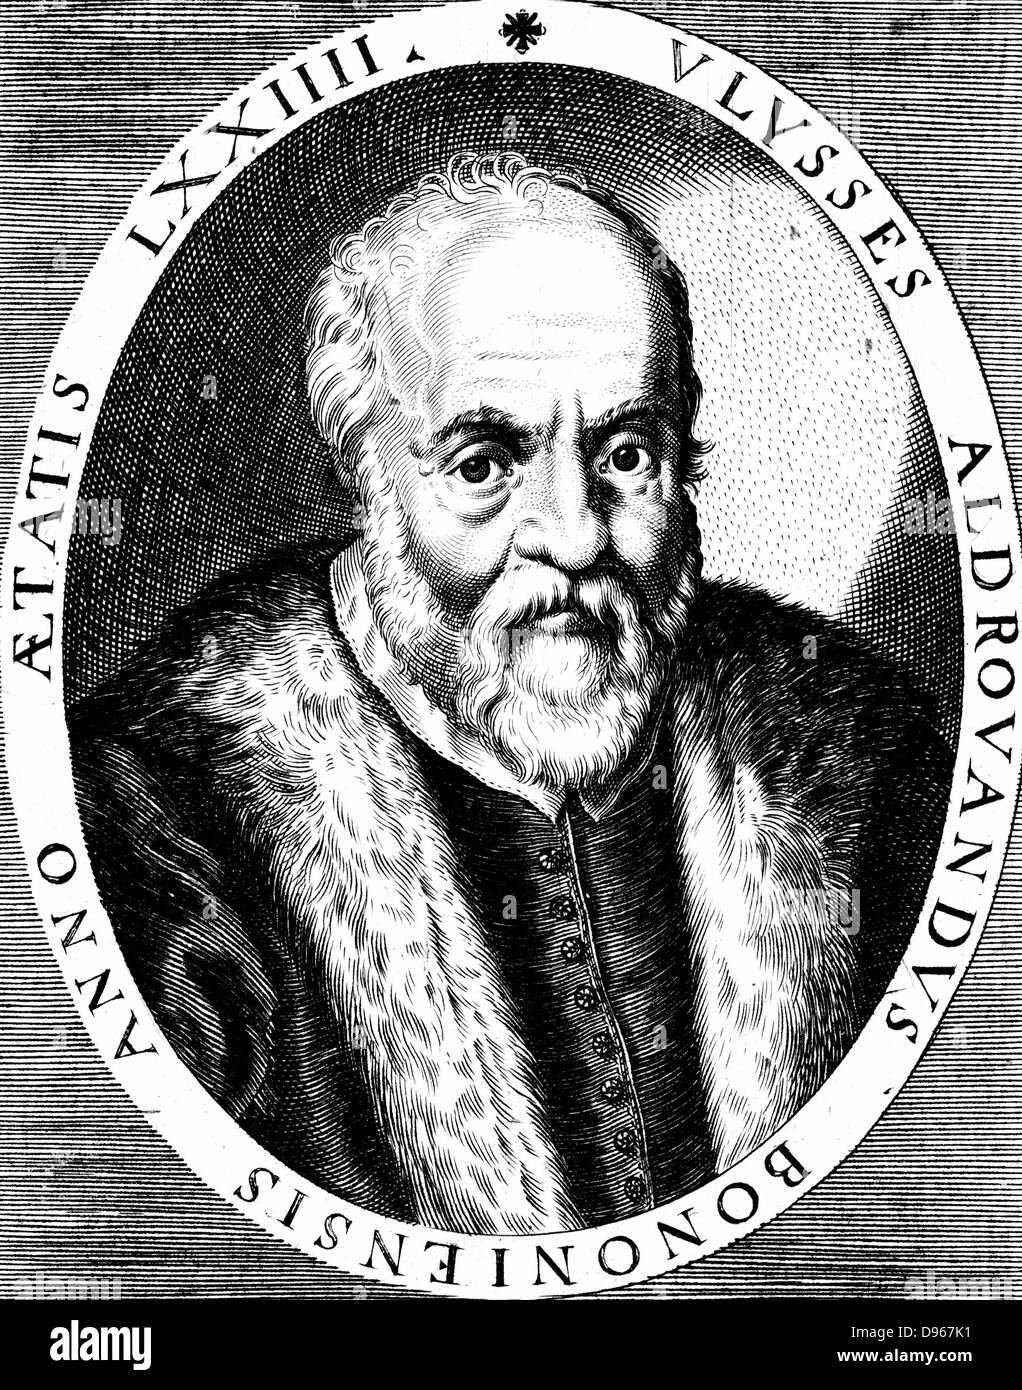 Ulisse Aldrovandi (1522-1605) italienischer Botaniker, Naturforscher und Arzt. Veröffentlichte illustrierte Bücher über Fische, Vögel und Insekten. 16. jahrhundert Kupferstich. Stockfoto